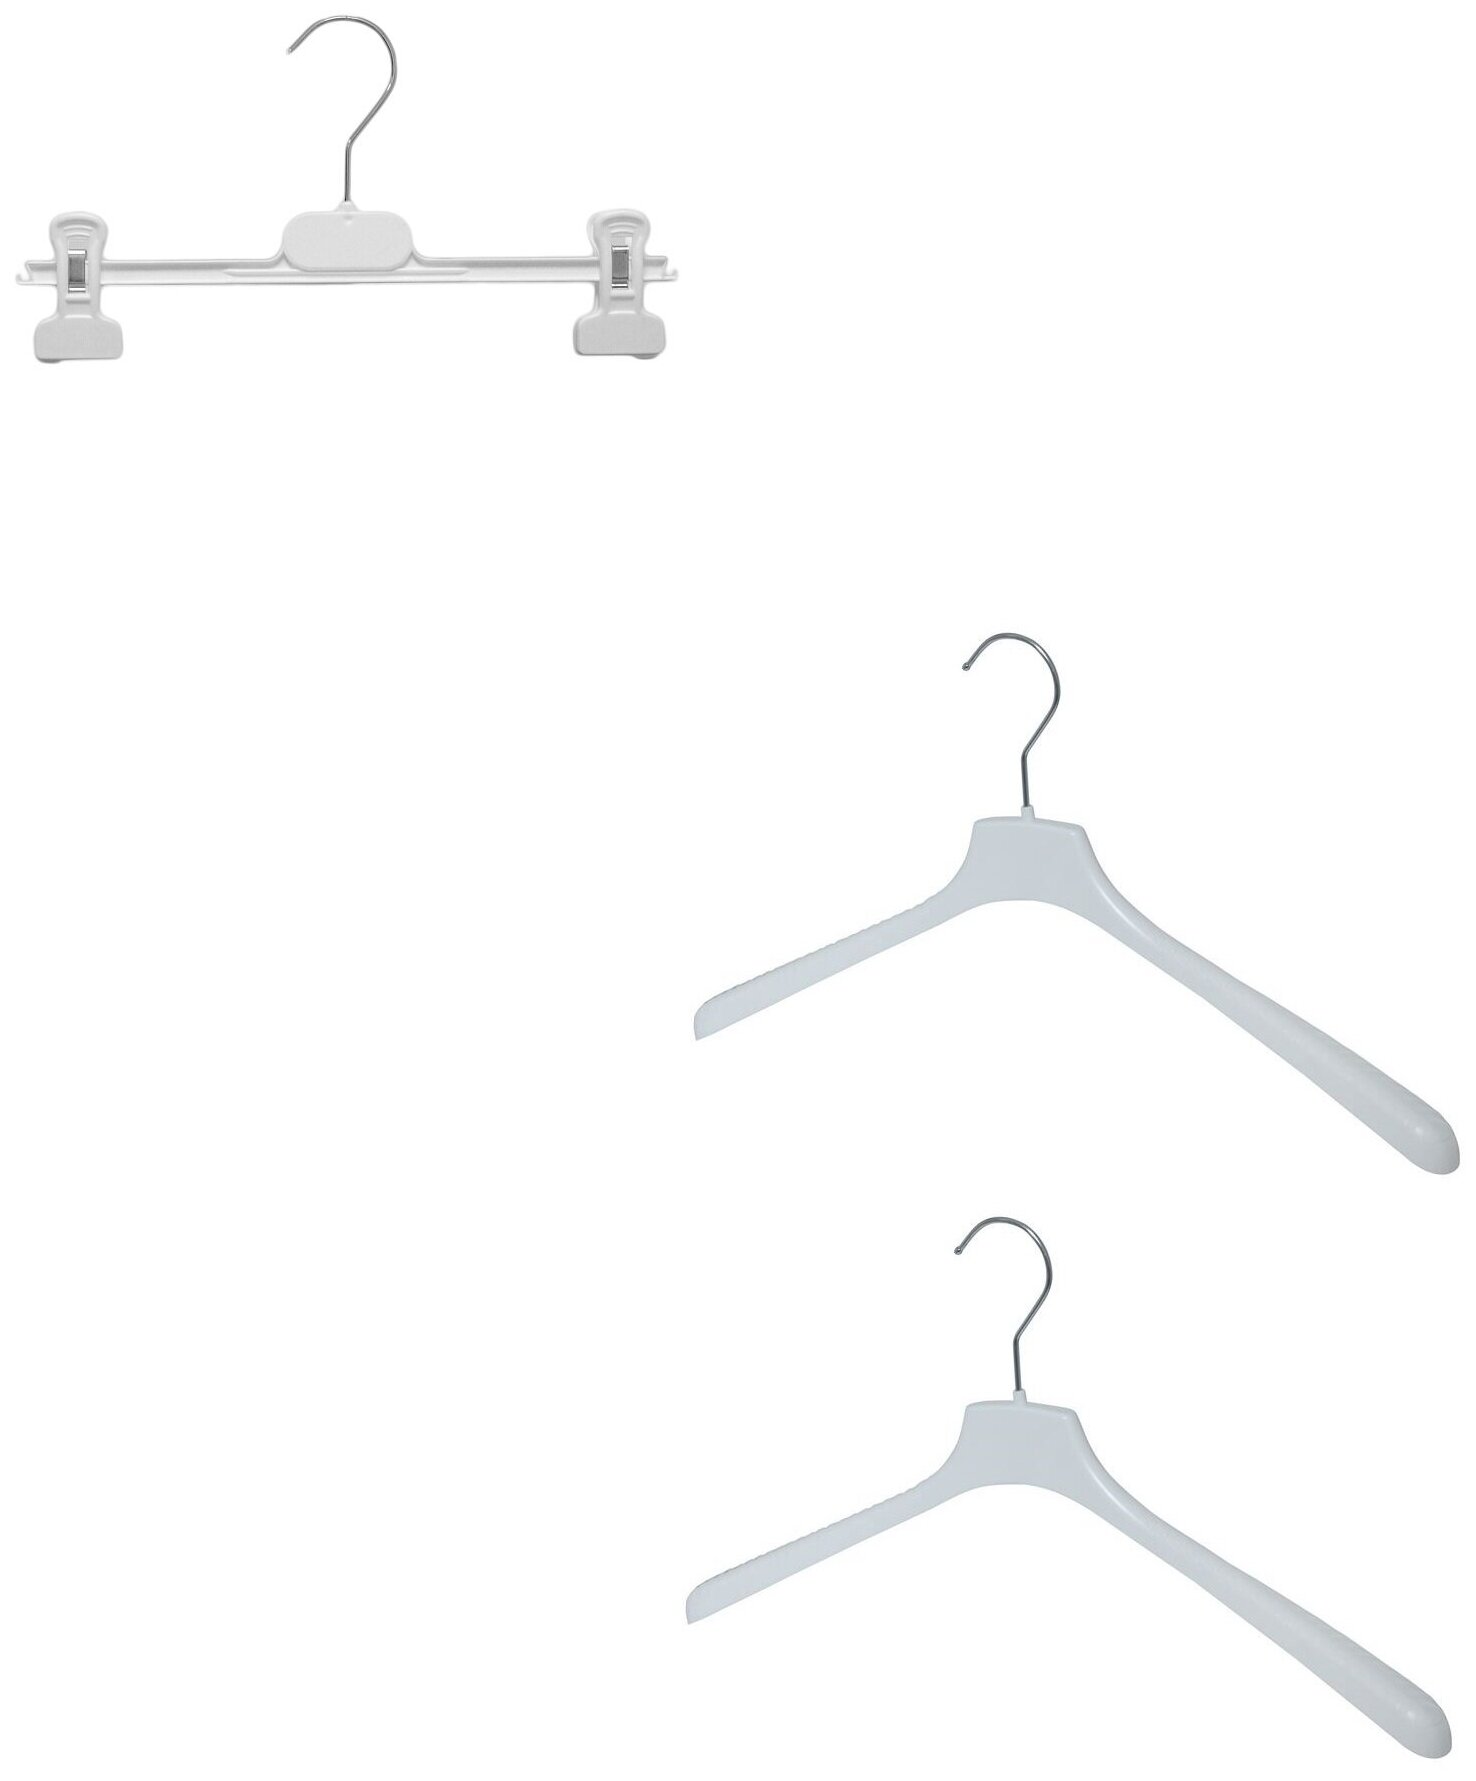 Вешалки Valexa Набор (для детской одежды СМ-33 2 шт 330ммх28мм+ брючная БВ-4 1 шт 300ммх10мм) белые